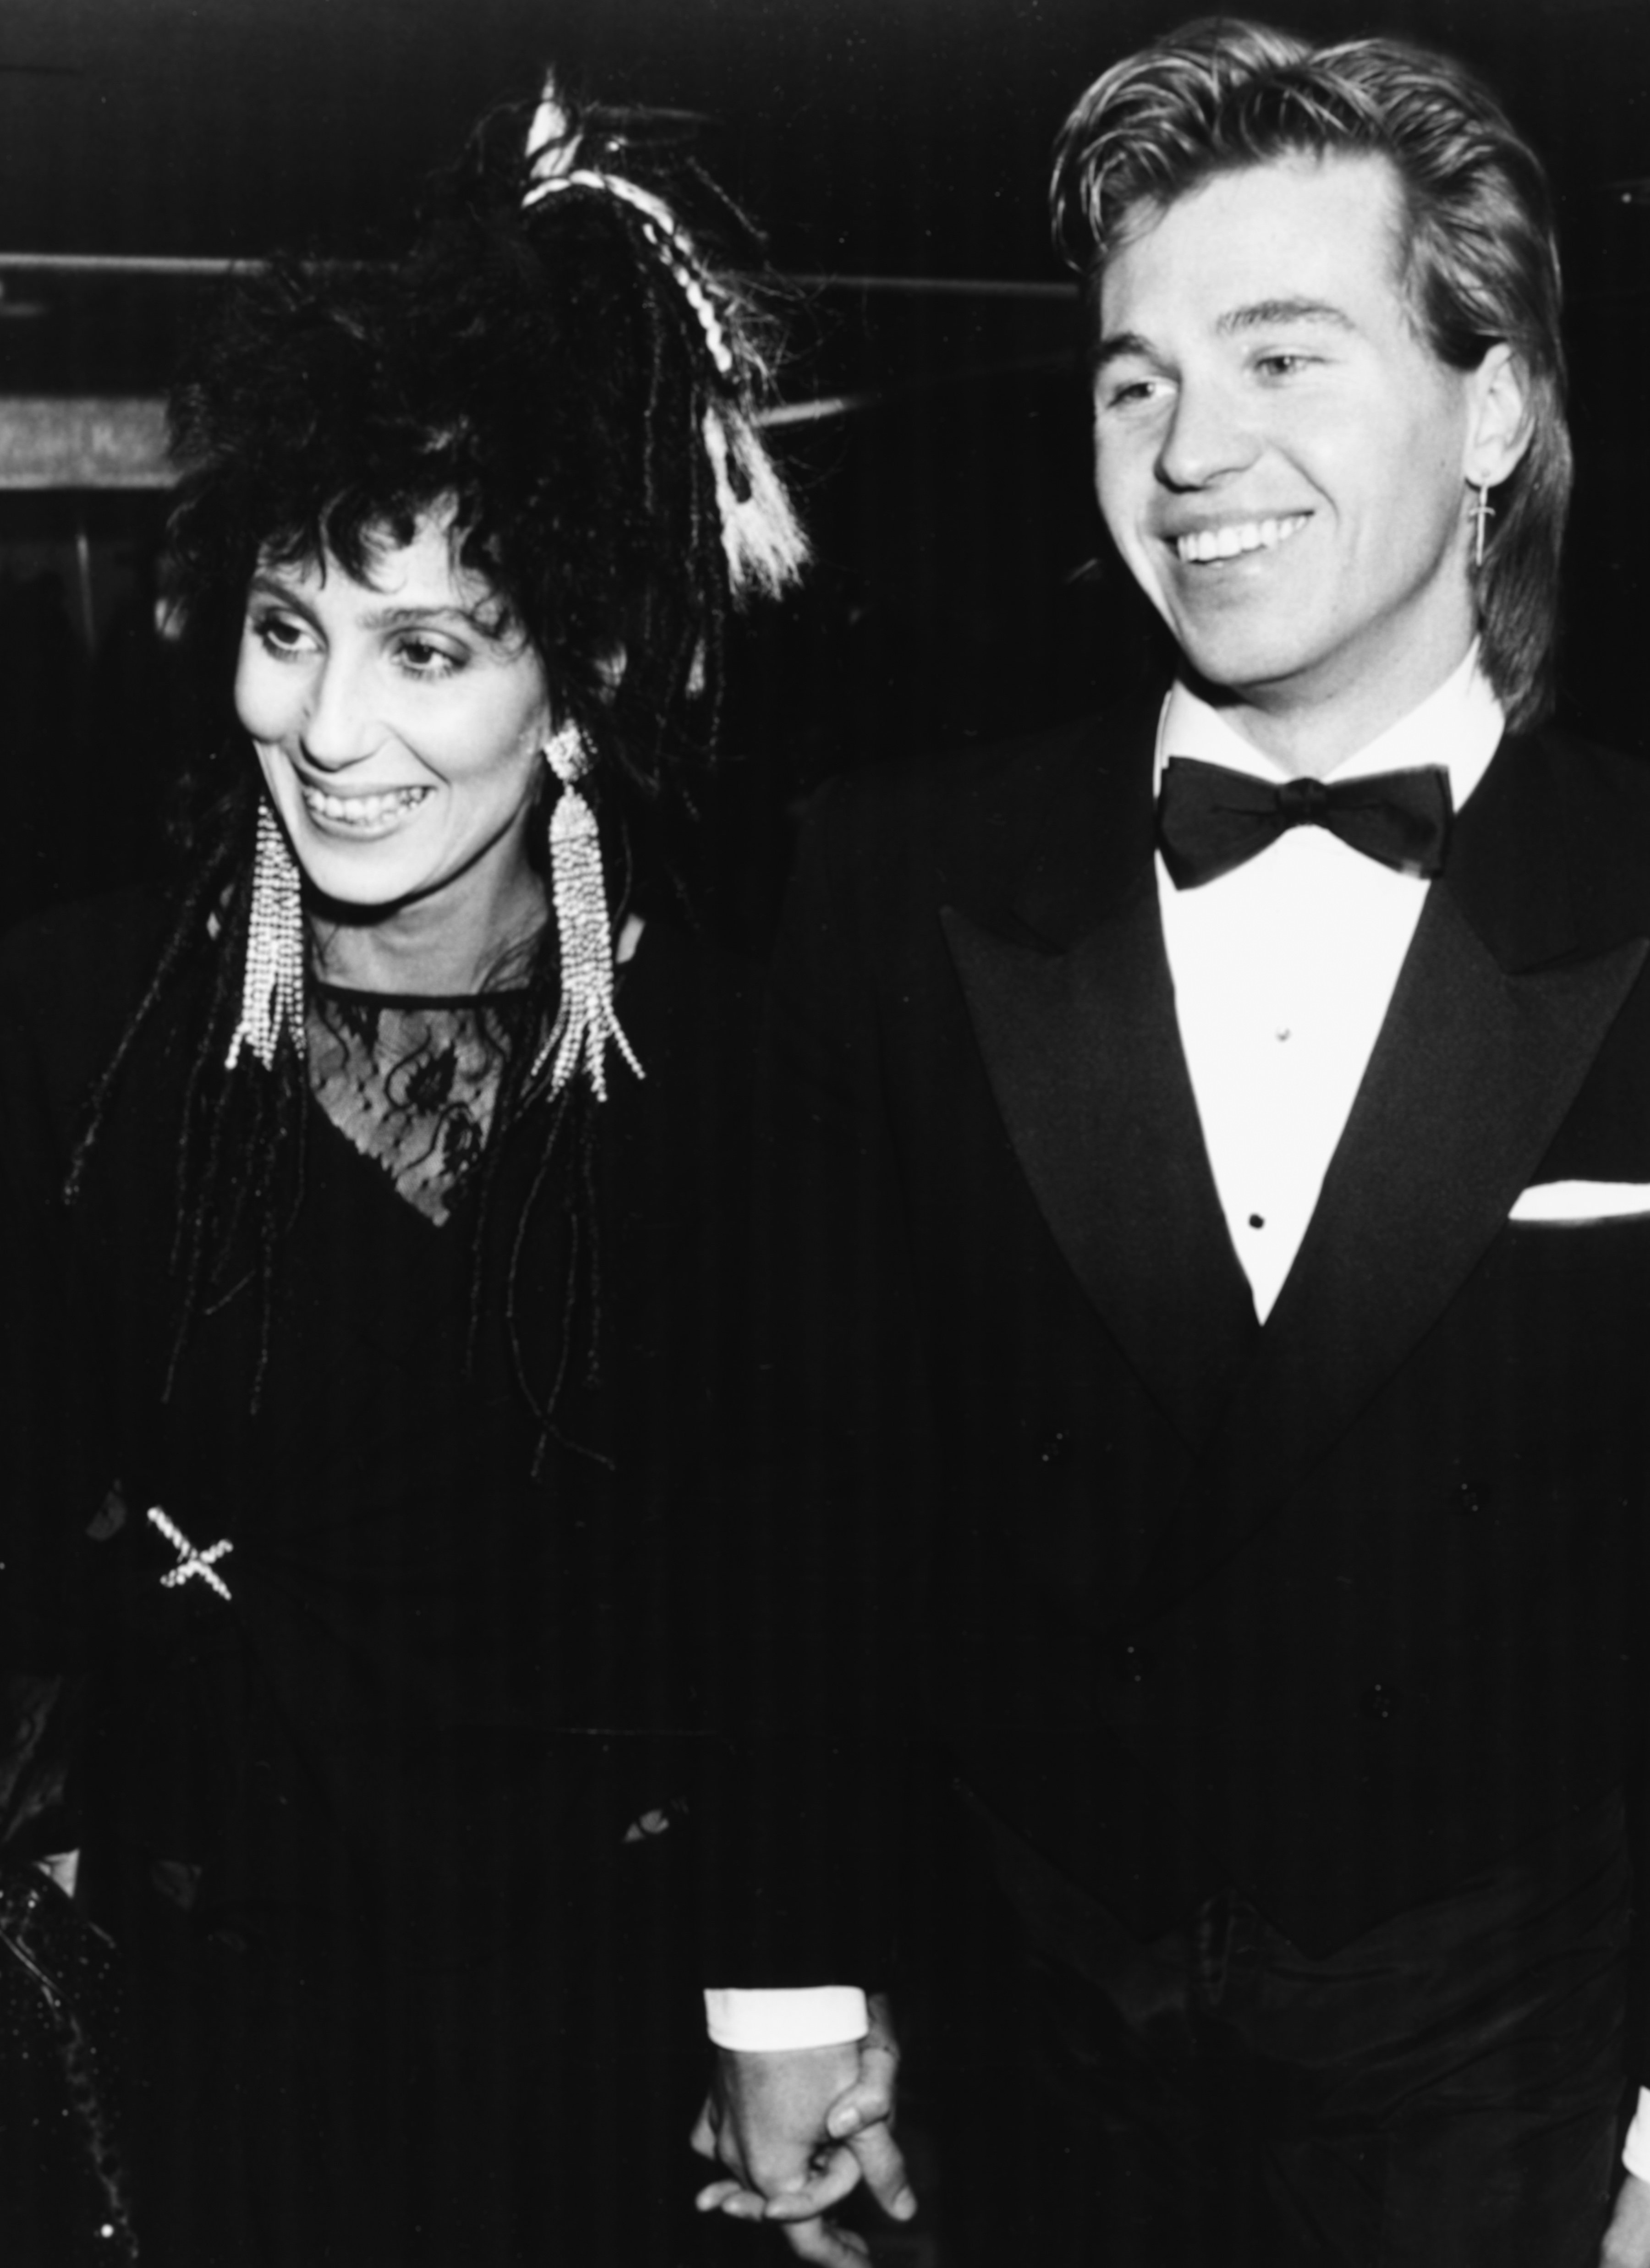 La chanteuse Cher et l'acteur Val Kilmer assistant aux BAFTA Awards main dans la main, Londres, 25 mars 1984. | Photo : Getty Images